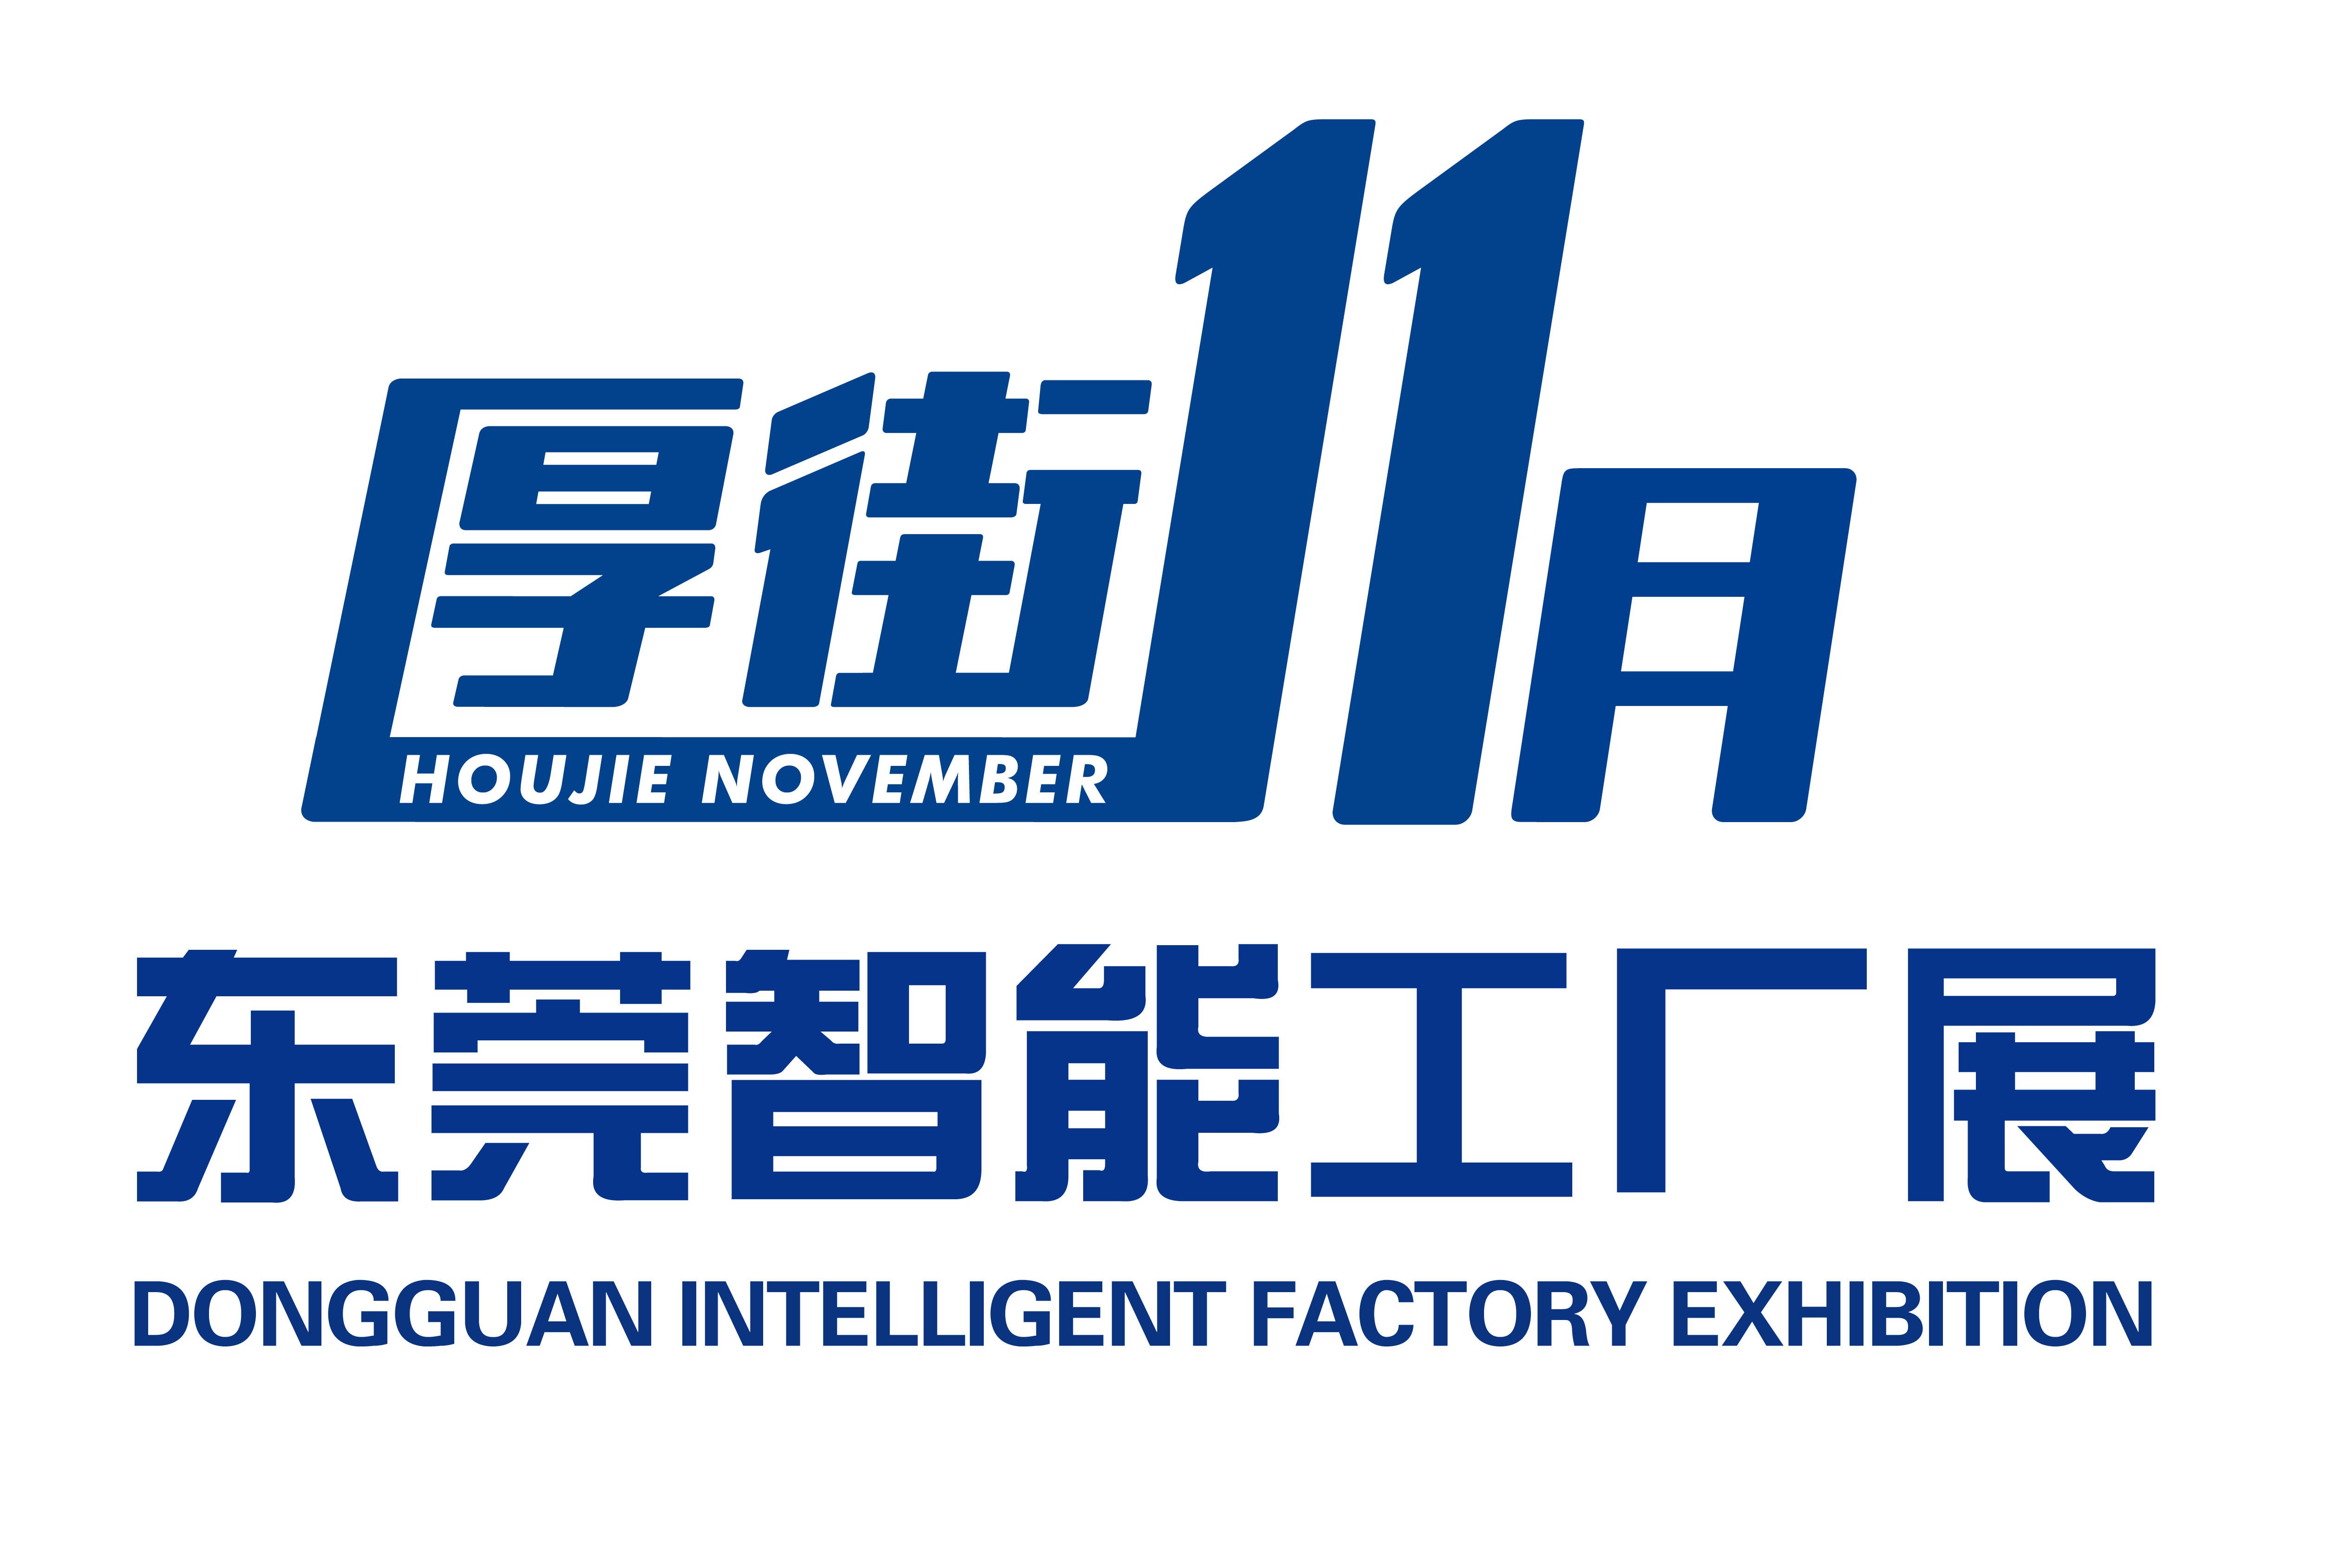 2020东莞国际工业自动化及机器人展览会